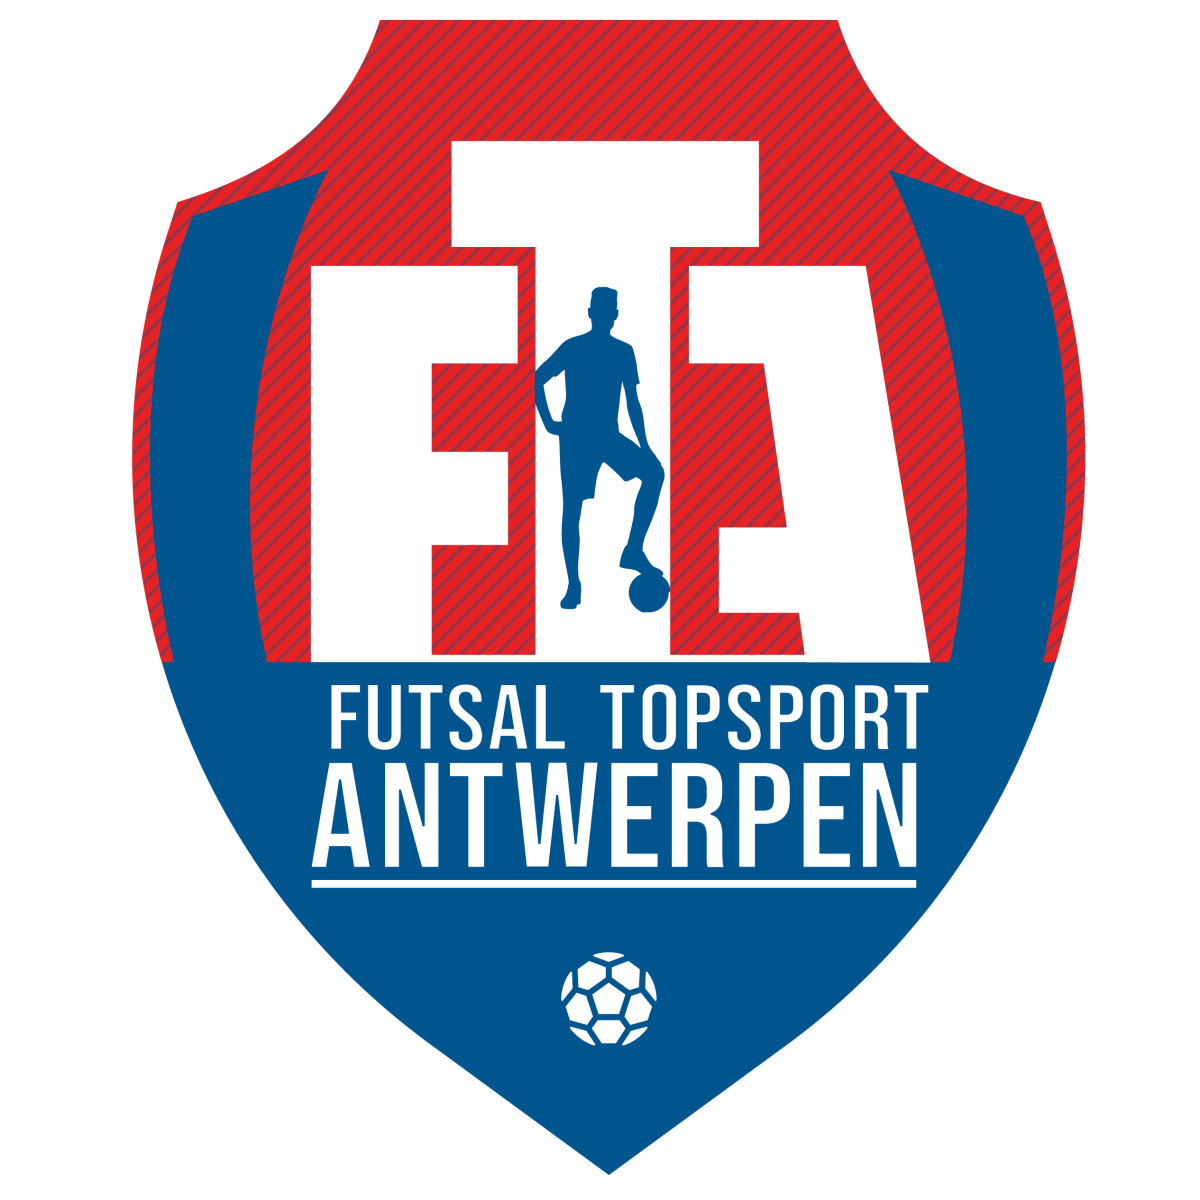 Futsal Topsport Antwerpen